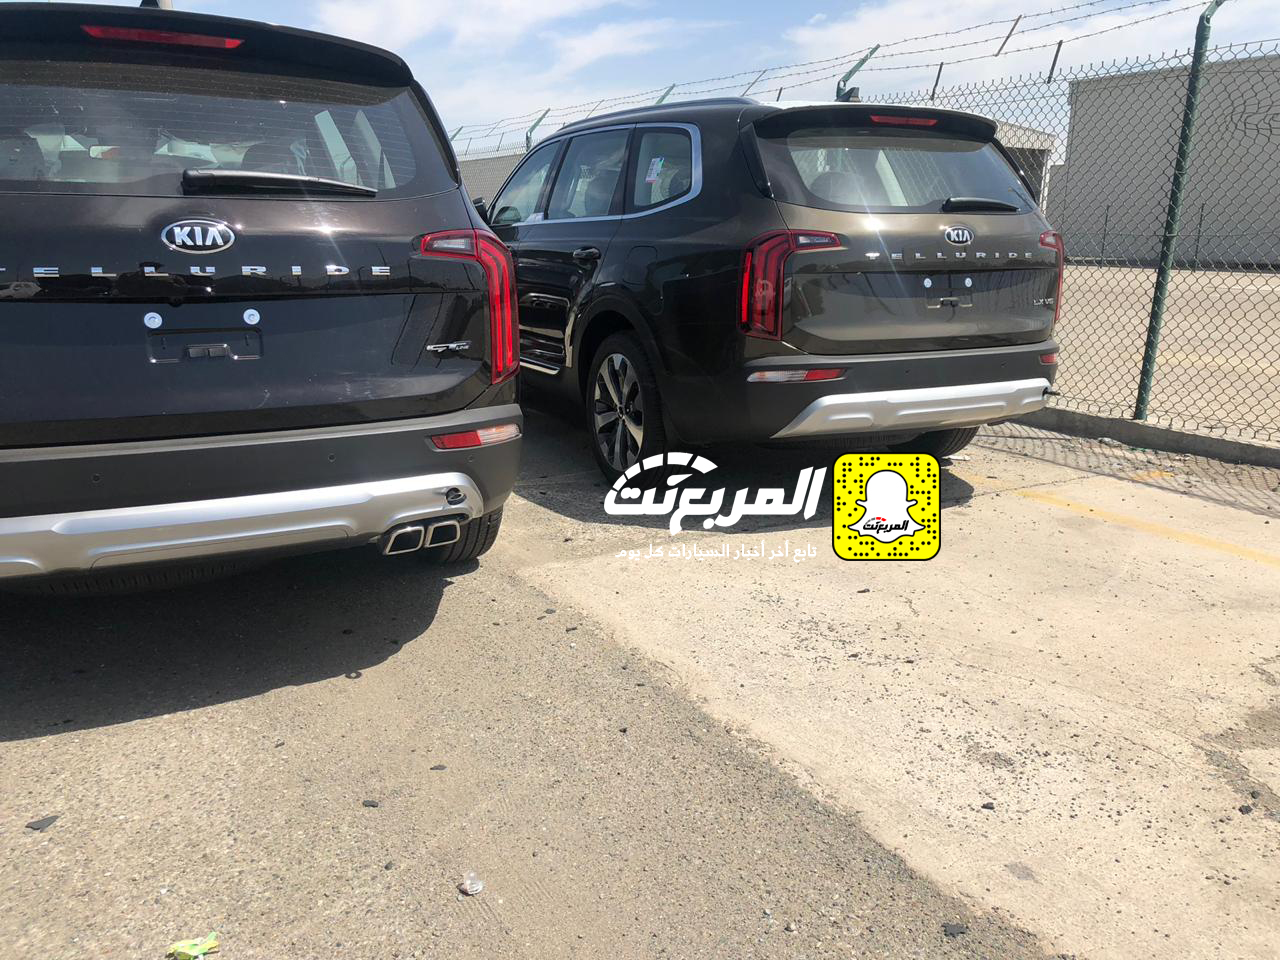 "بالصور" وصول كيا تيلورايد 2020 الجديدة الى السعودية اكبر SUV من كيا + موعد البيع الرسمي 18